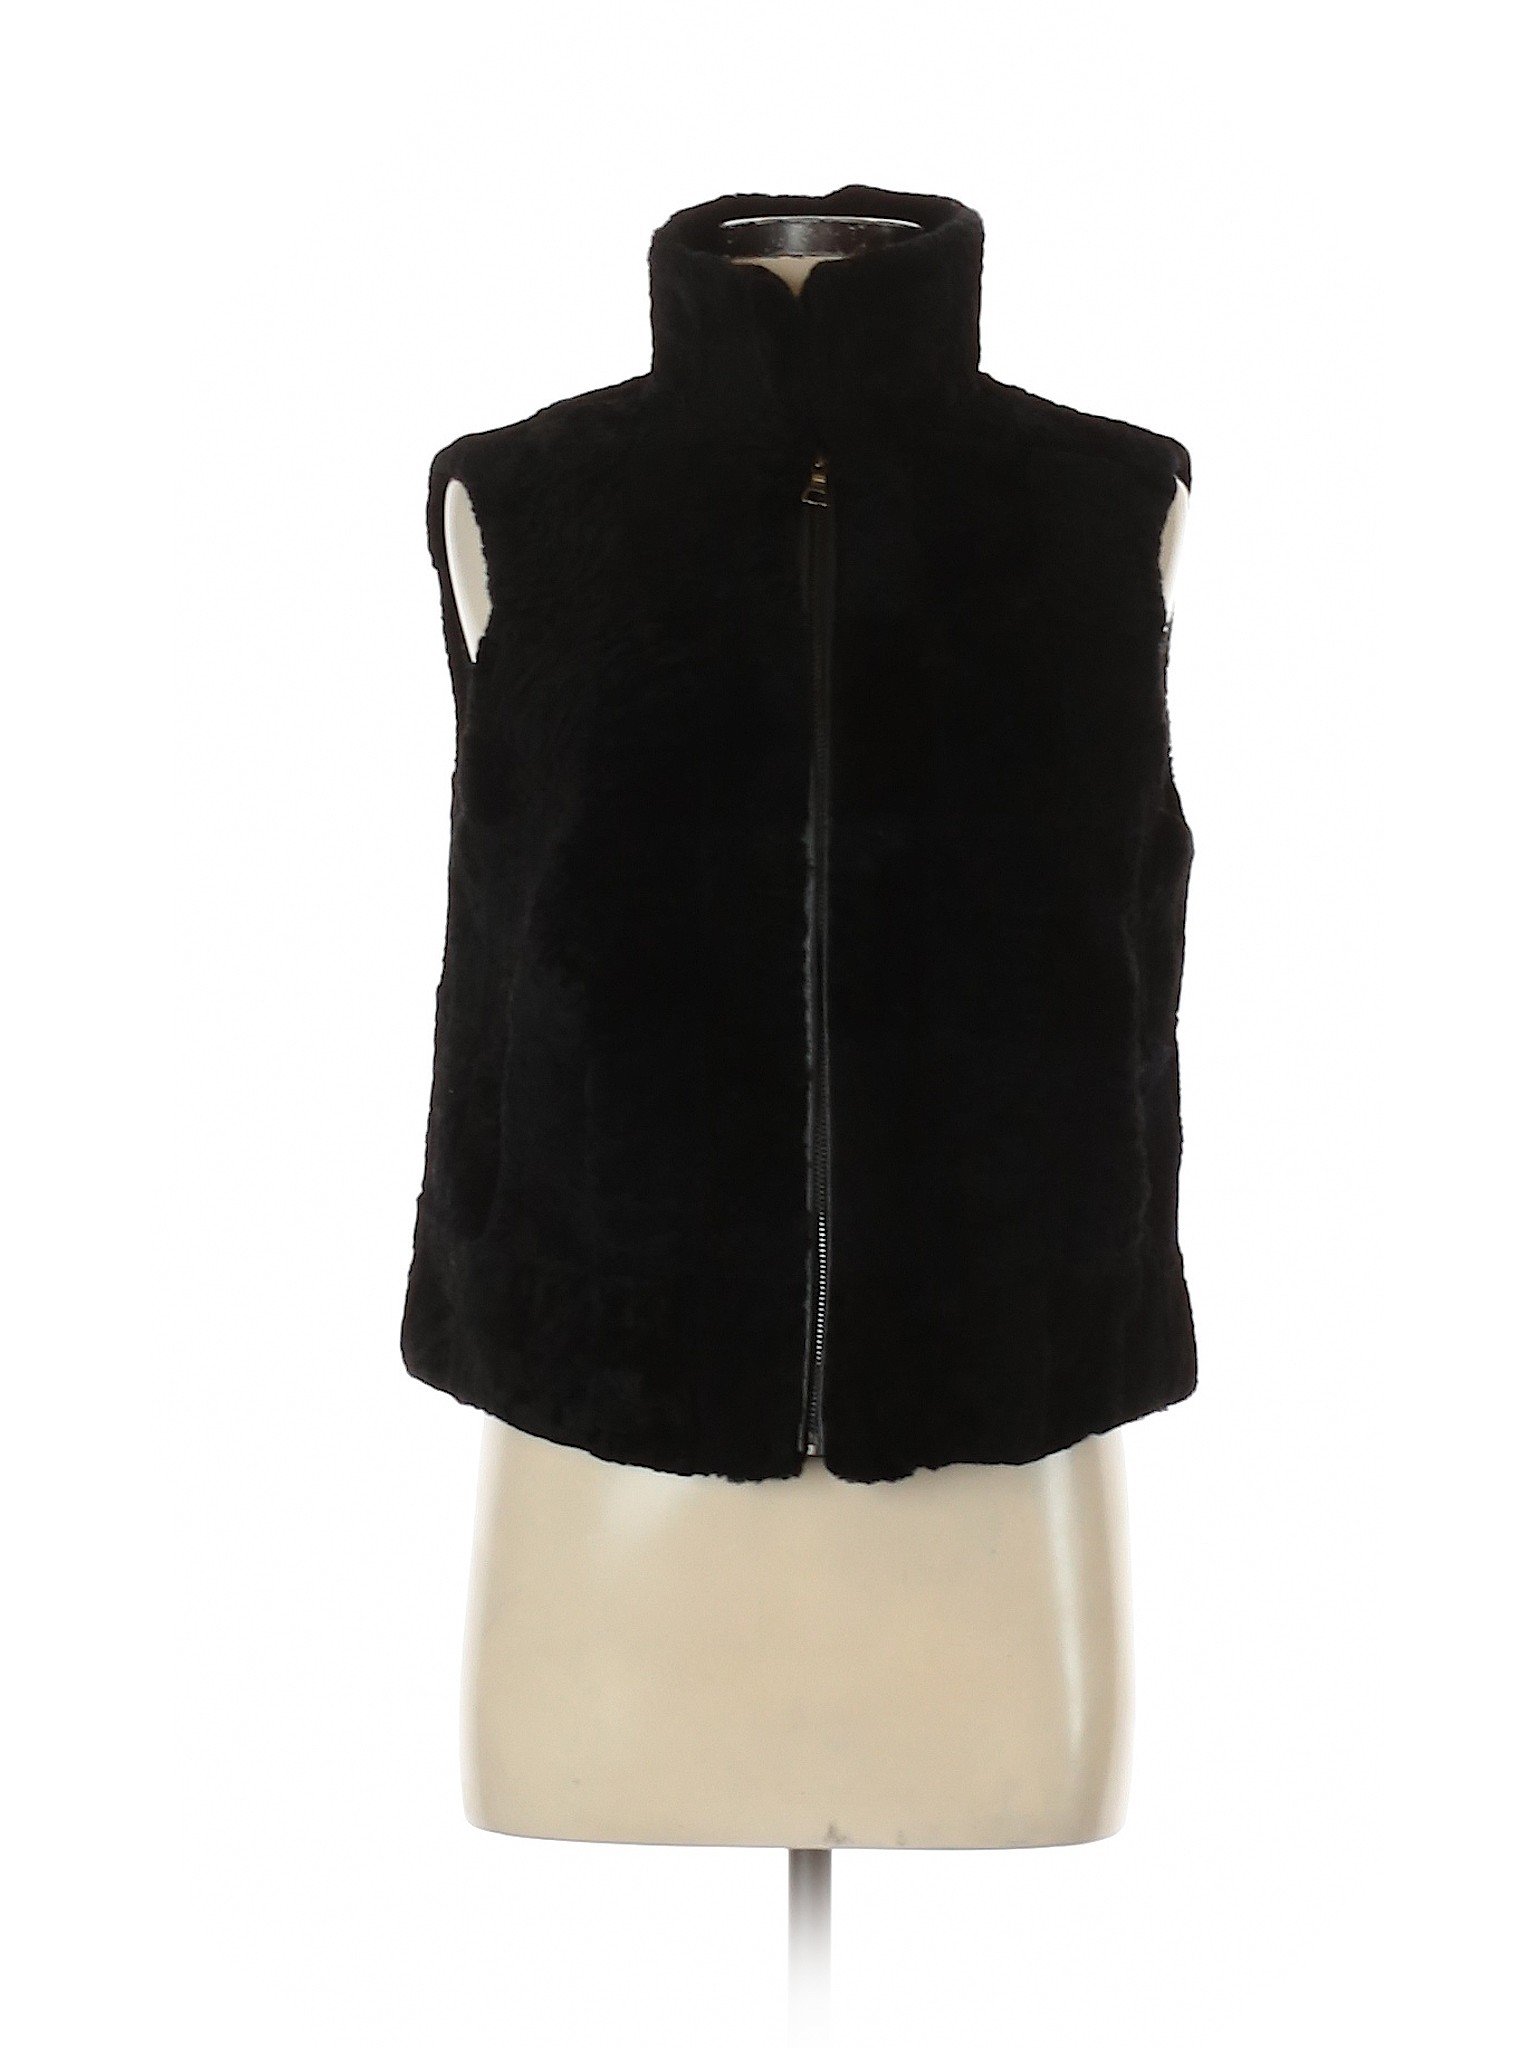 Adrienne Landau Women Black Faux Fur Vest S | eBay